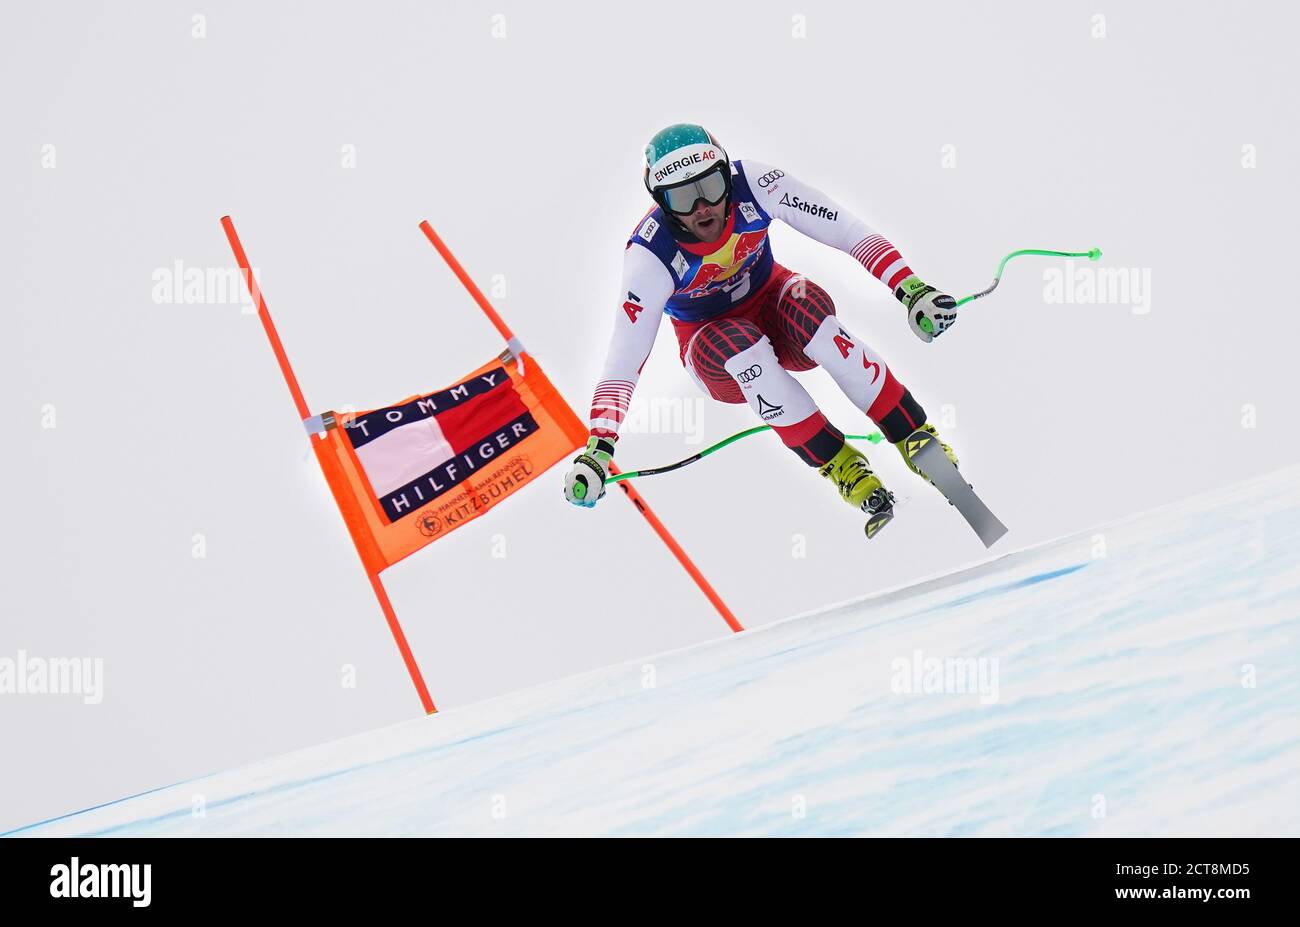 Vincent Kriechmayr si conclude 2° durante l'evento Men's Downhill per la Coppa del mondo di sci alpino FIS 2019-20 a Kitzbuhel, Austria. FOTO DI CREDITO : © MAR Foto Stock